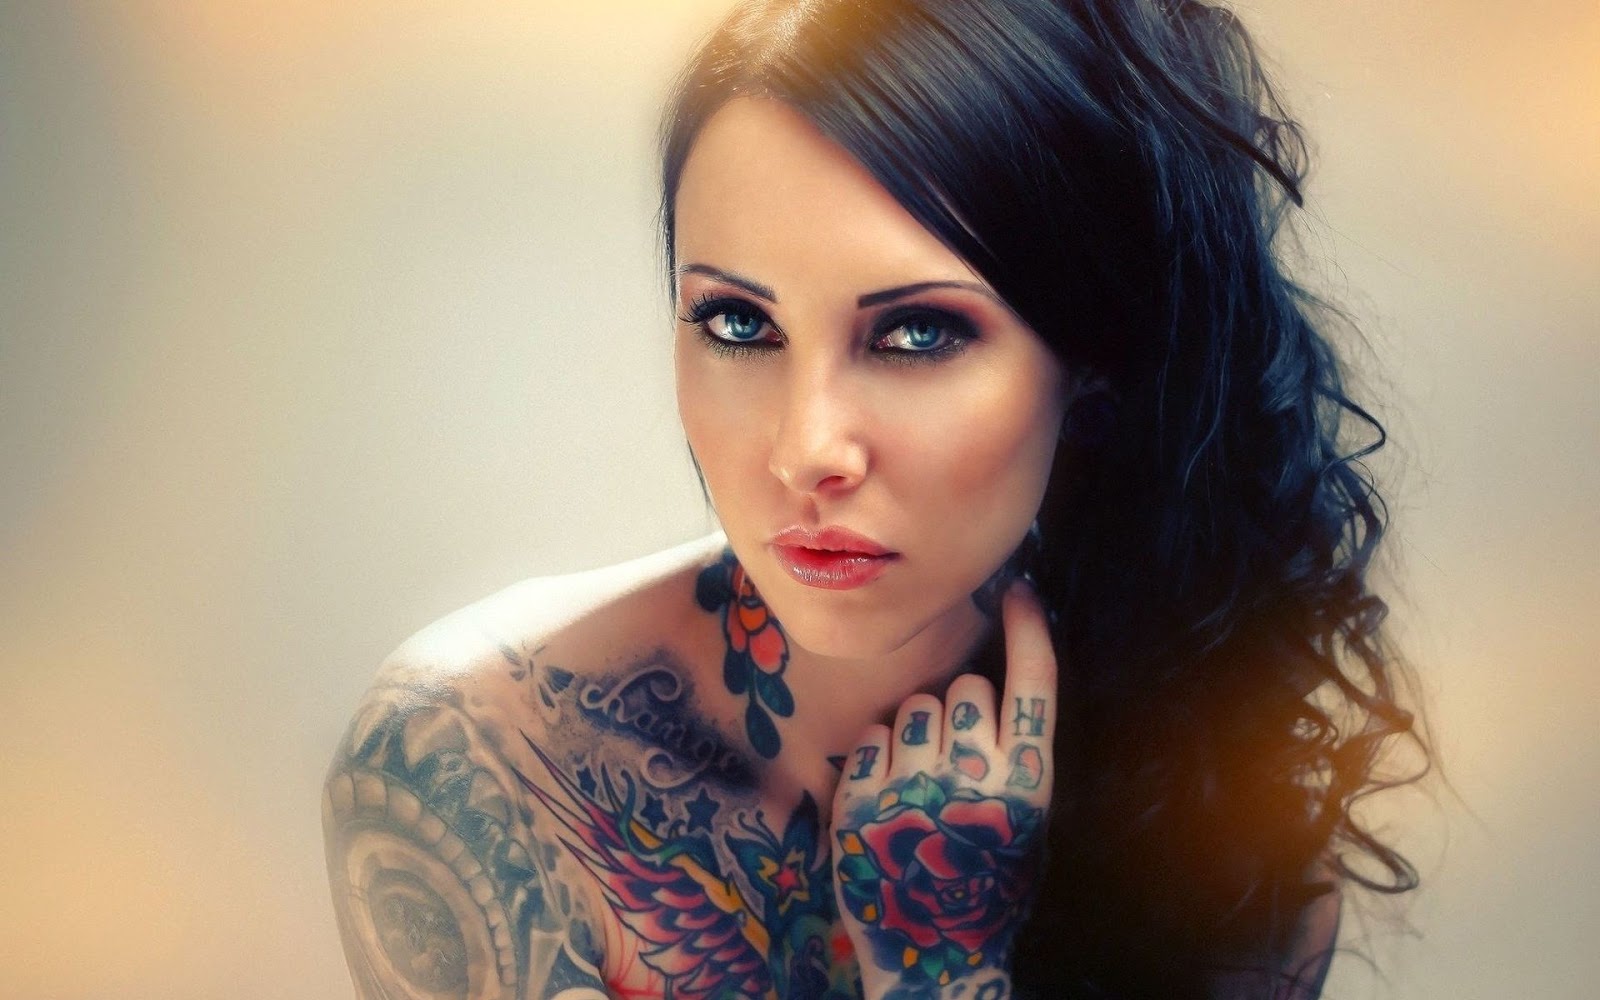 Sexy Wallpaper: Hot Tattoos Girls